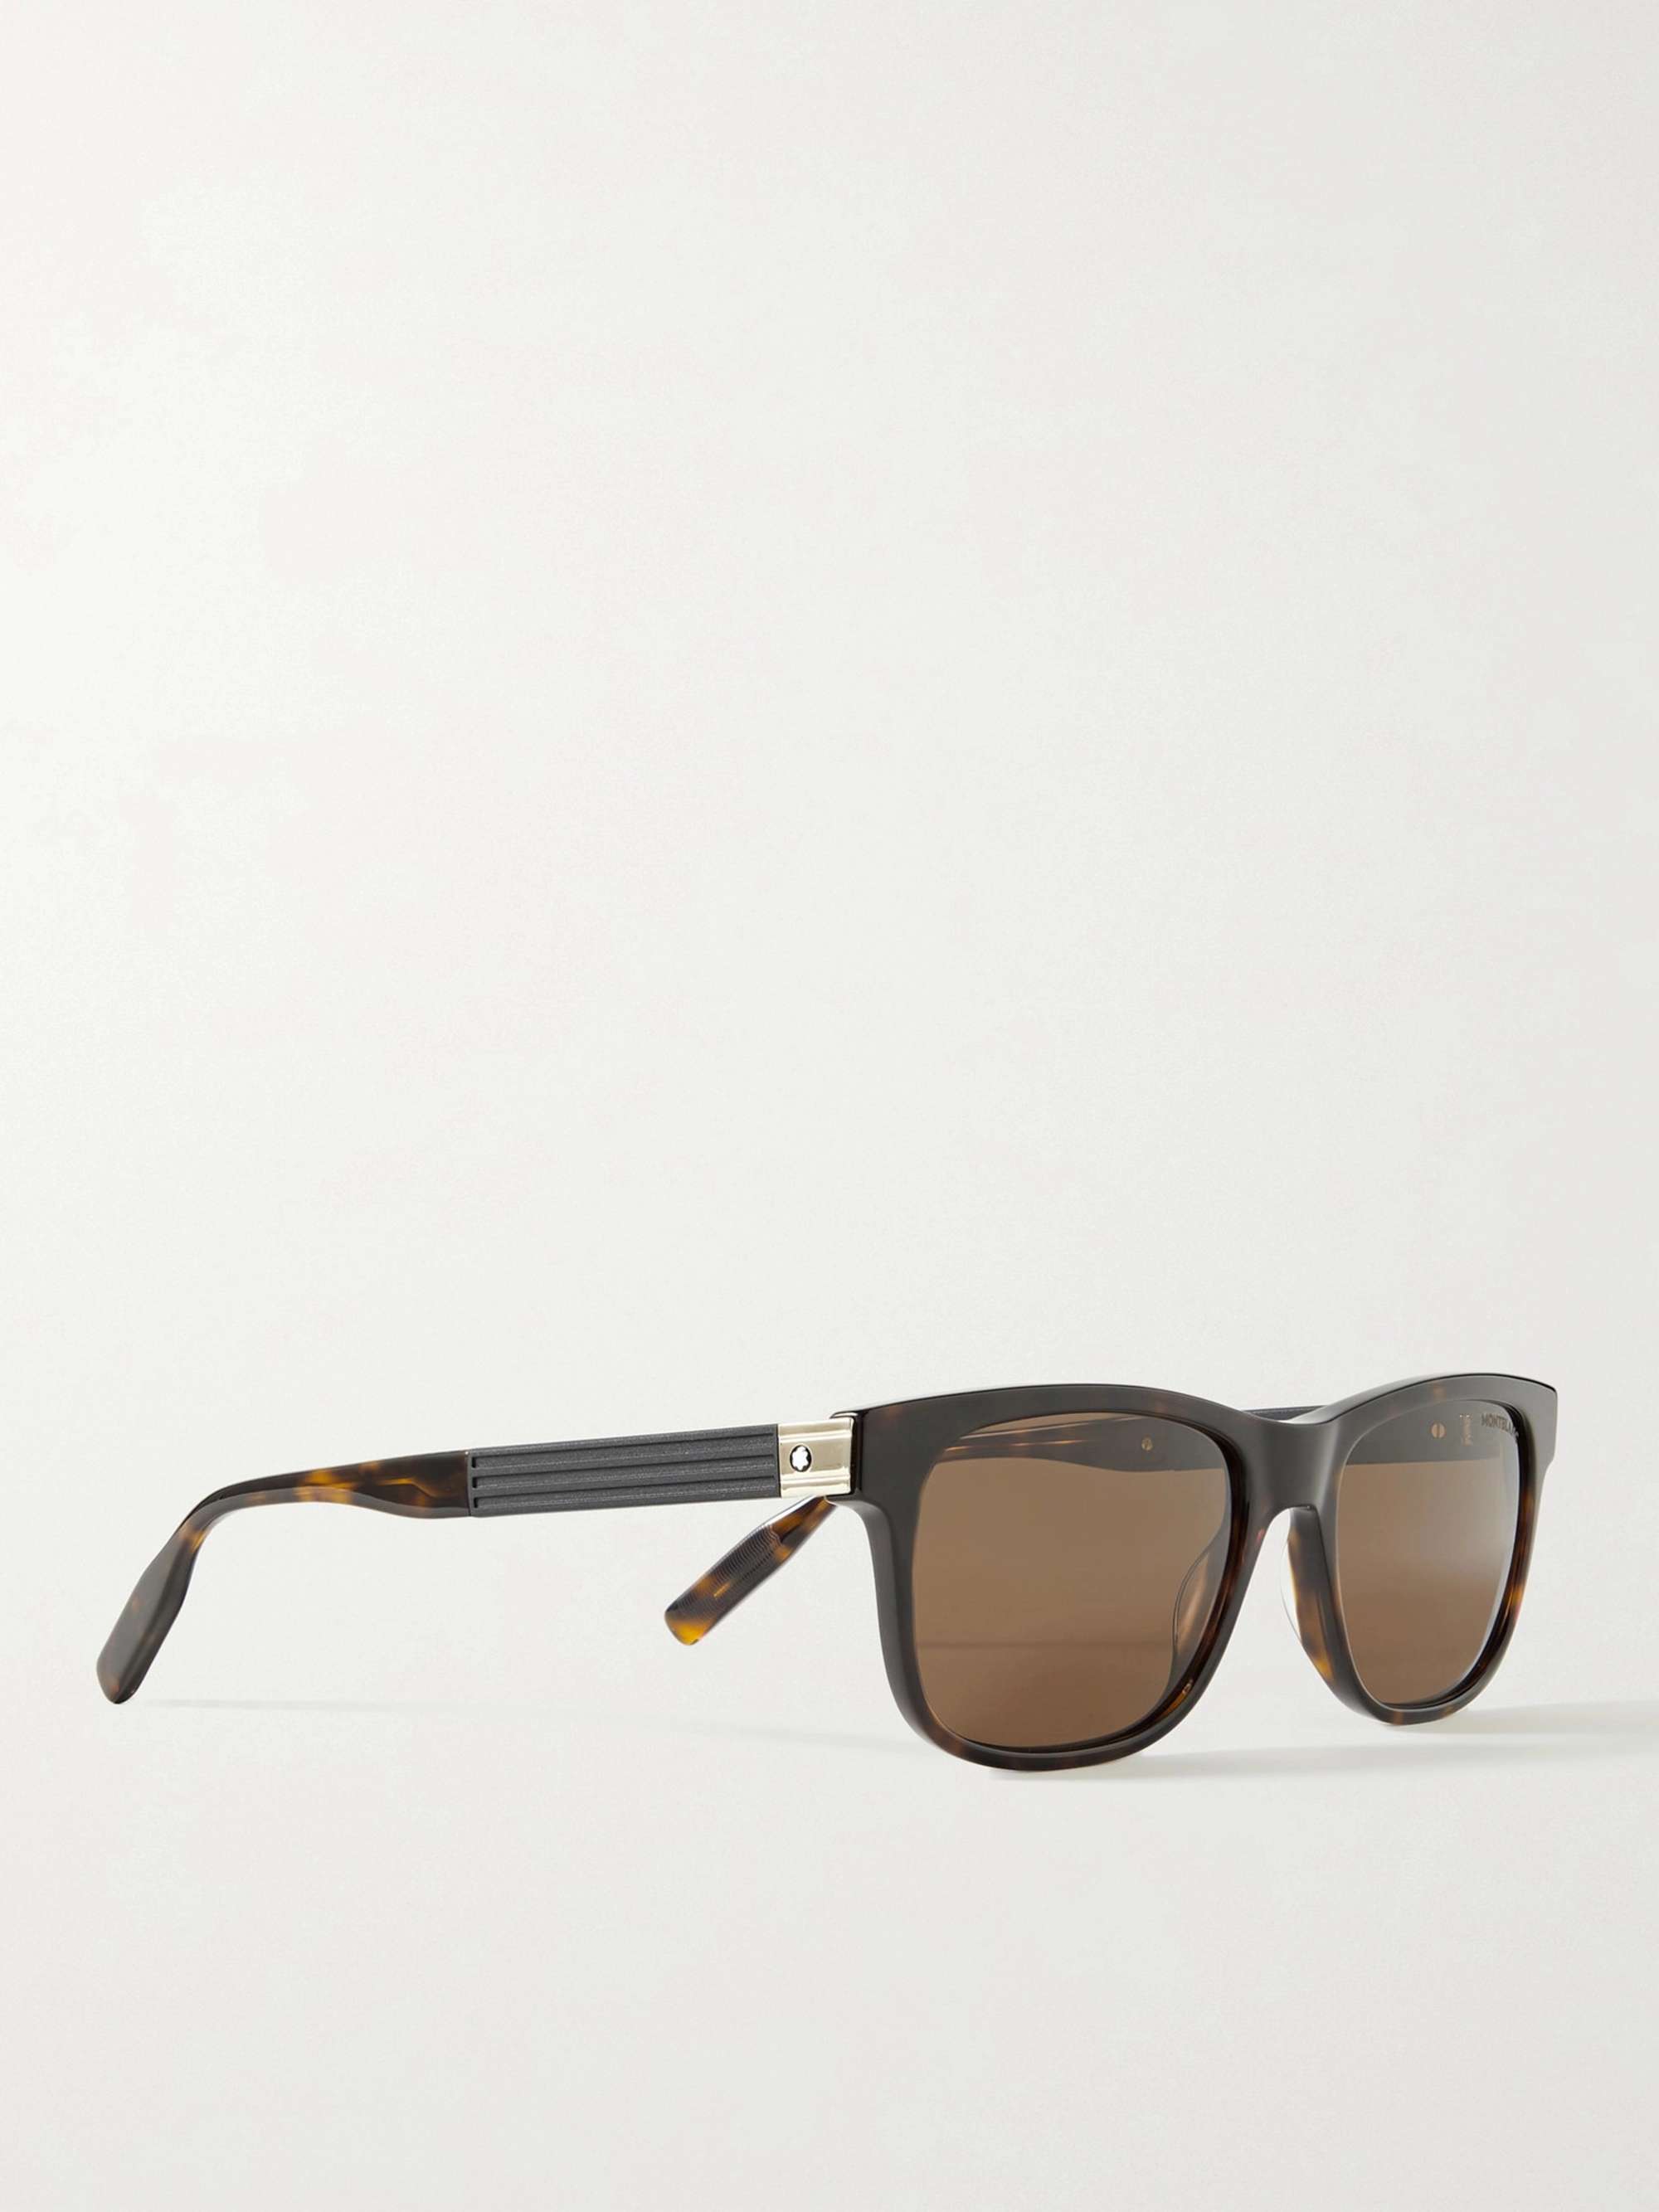 MONTBLANC D-Frame Tortoiseshell Acetate Sunglasses